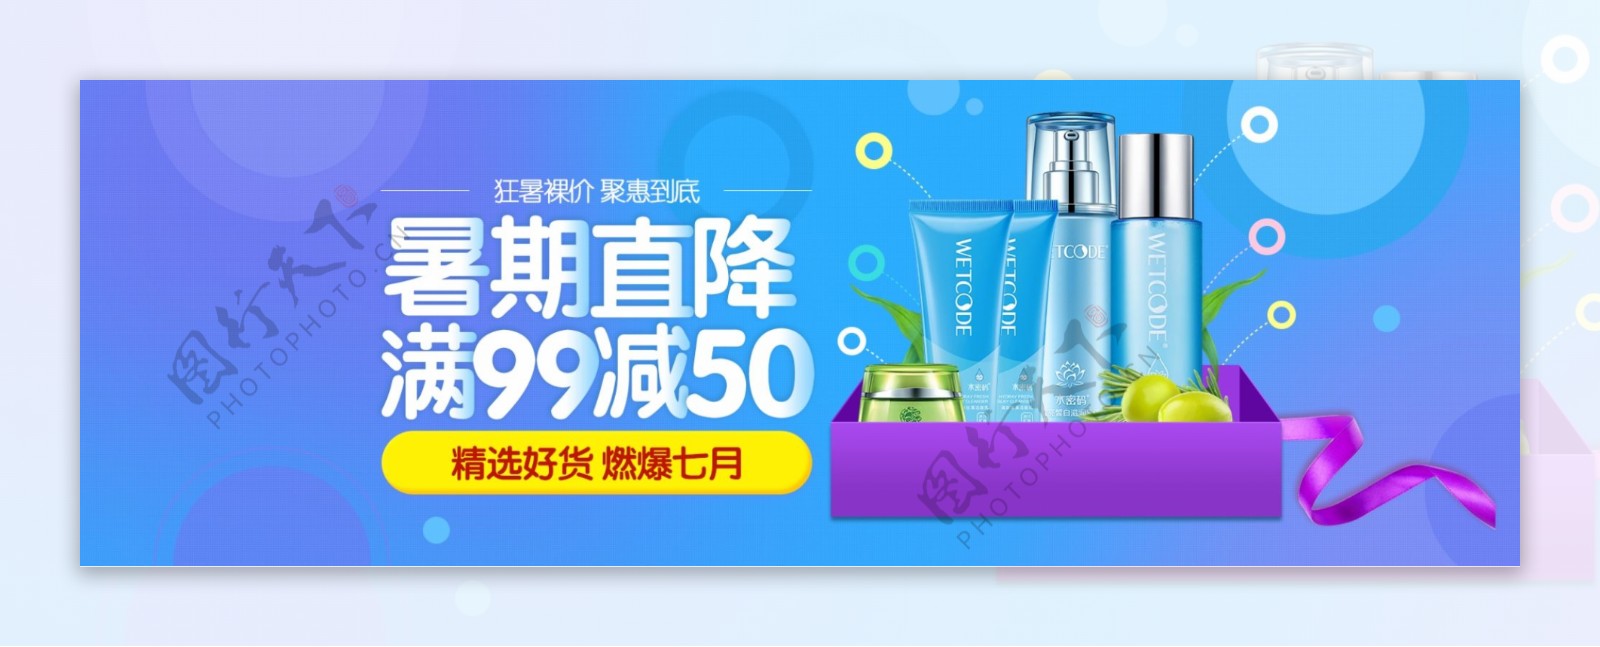 电商淘宝天猫美妆暑期促销海报banner